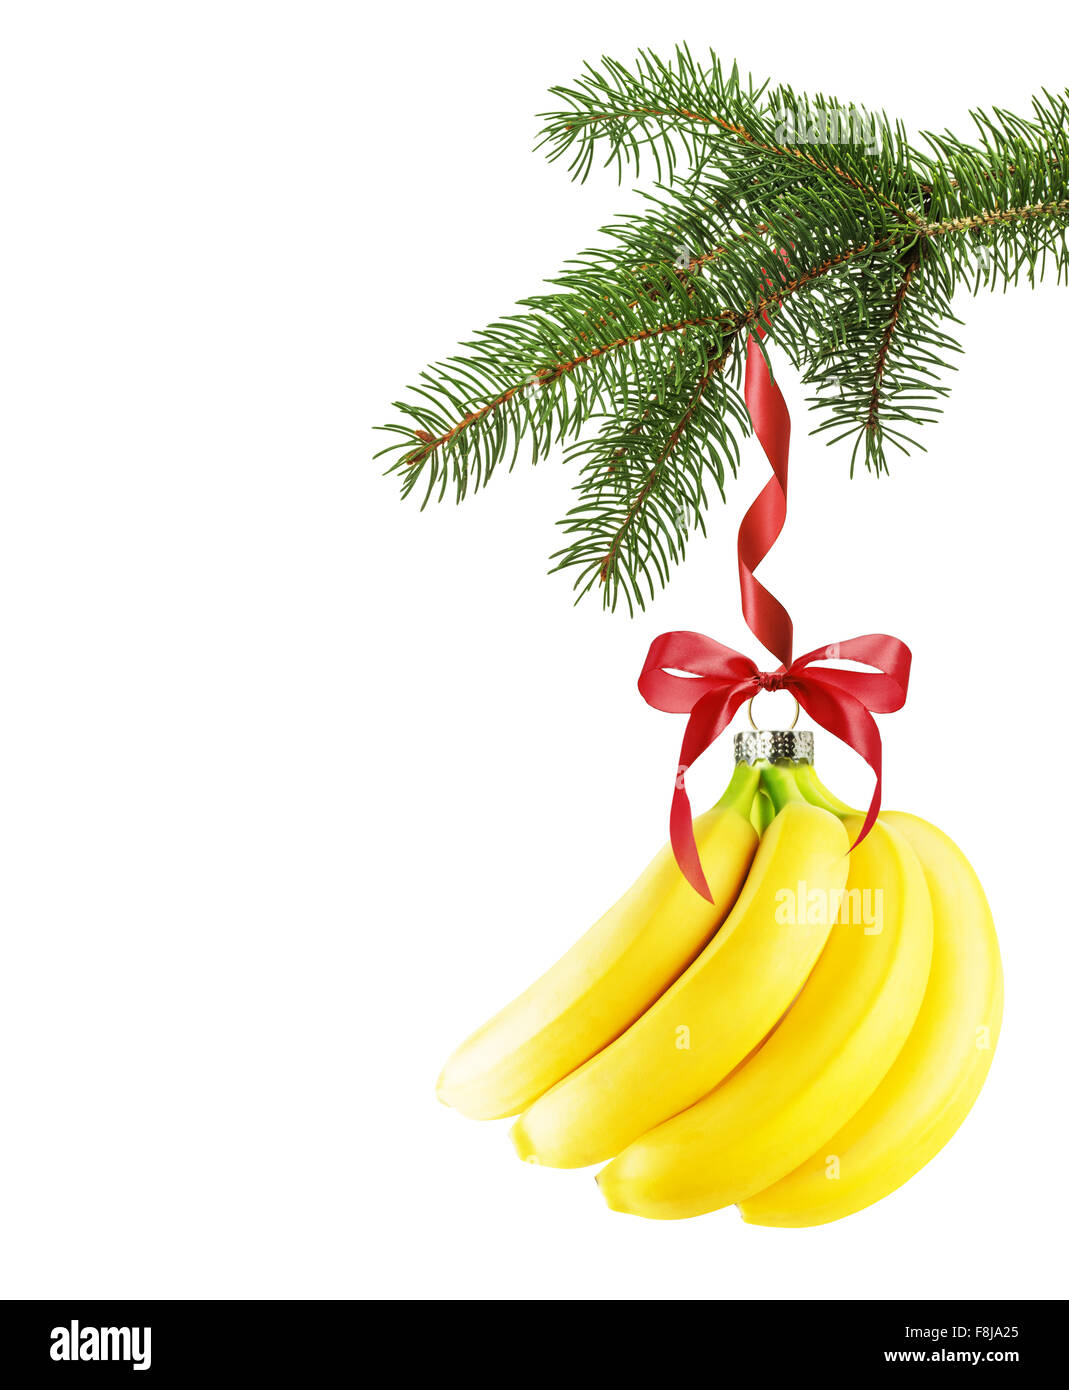 La direction générale de l'arbre de Noël avec boule de Noël en forme de banane isolé sur le fond blanc. Banque D'Images